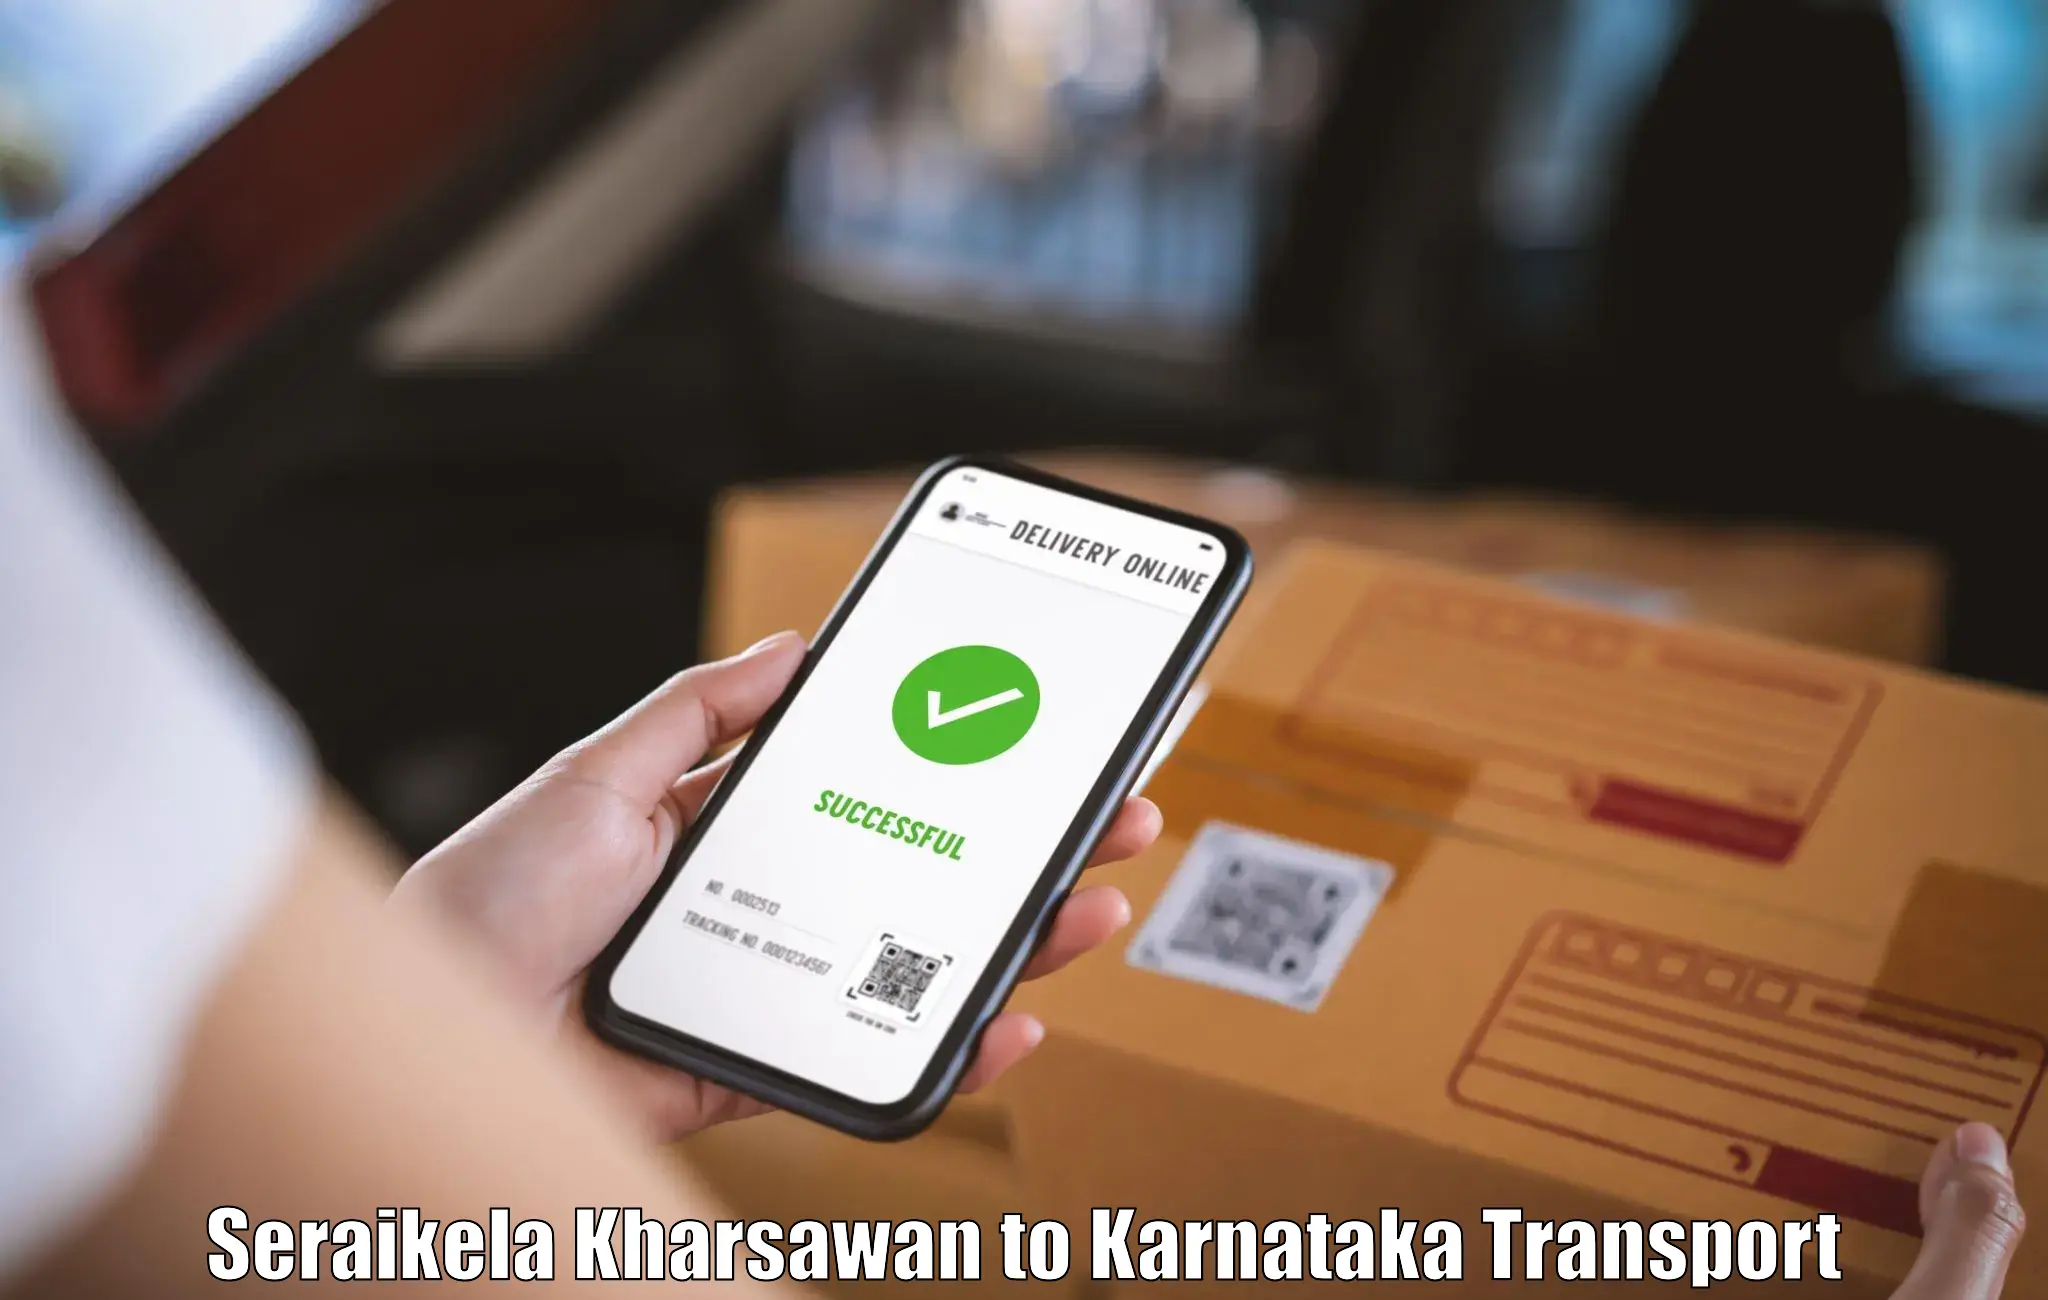 Online transport booking Seraikela Kharsawan to Dharwad